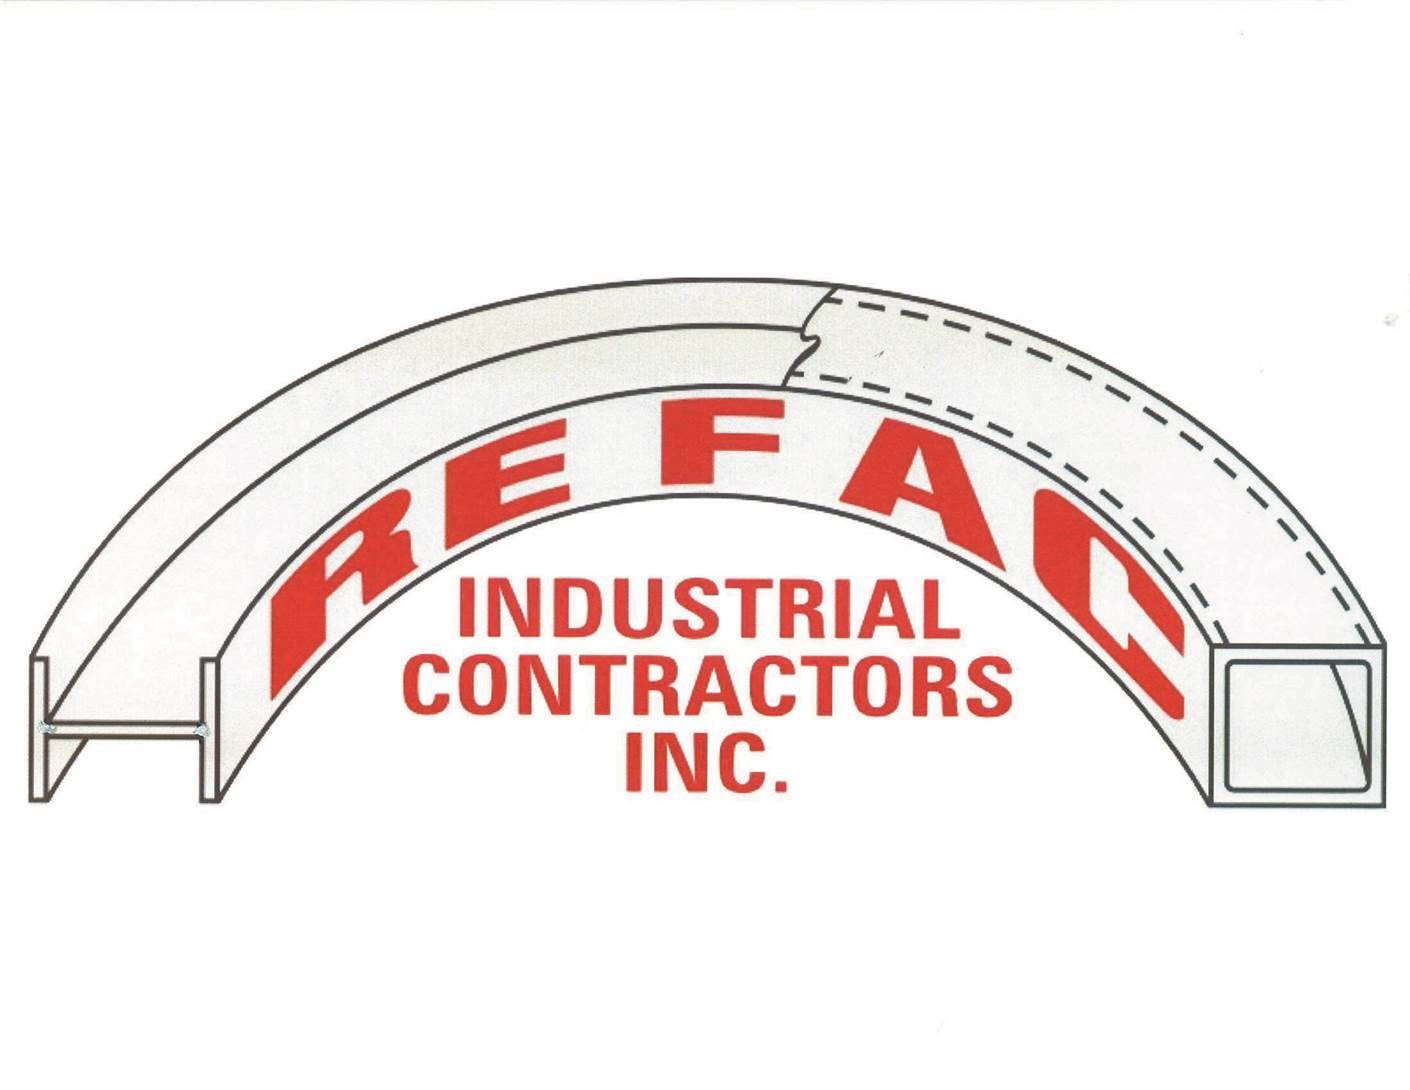 Refac Industrial Contractors